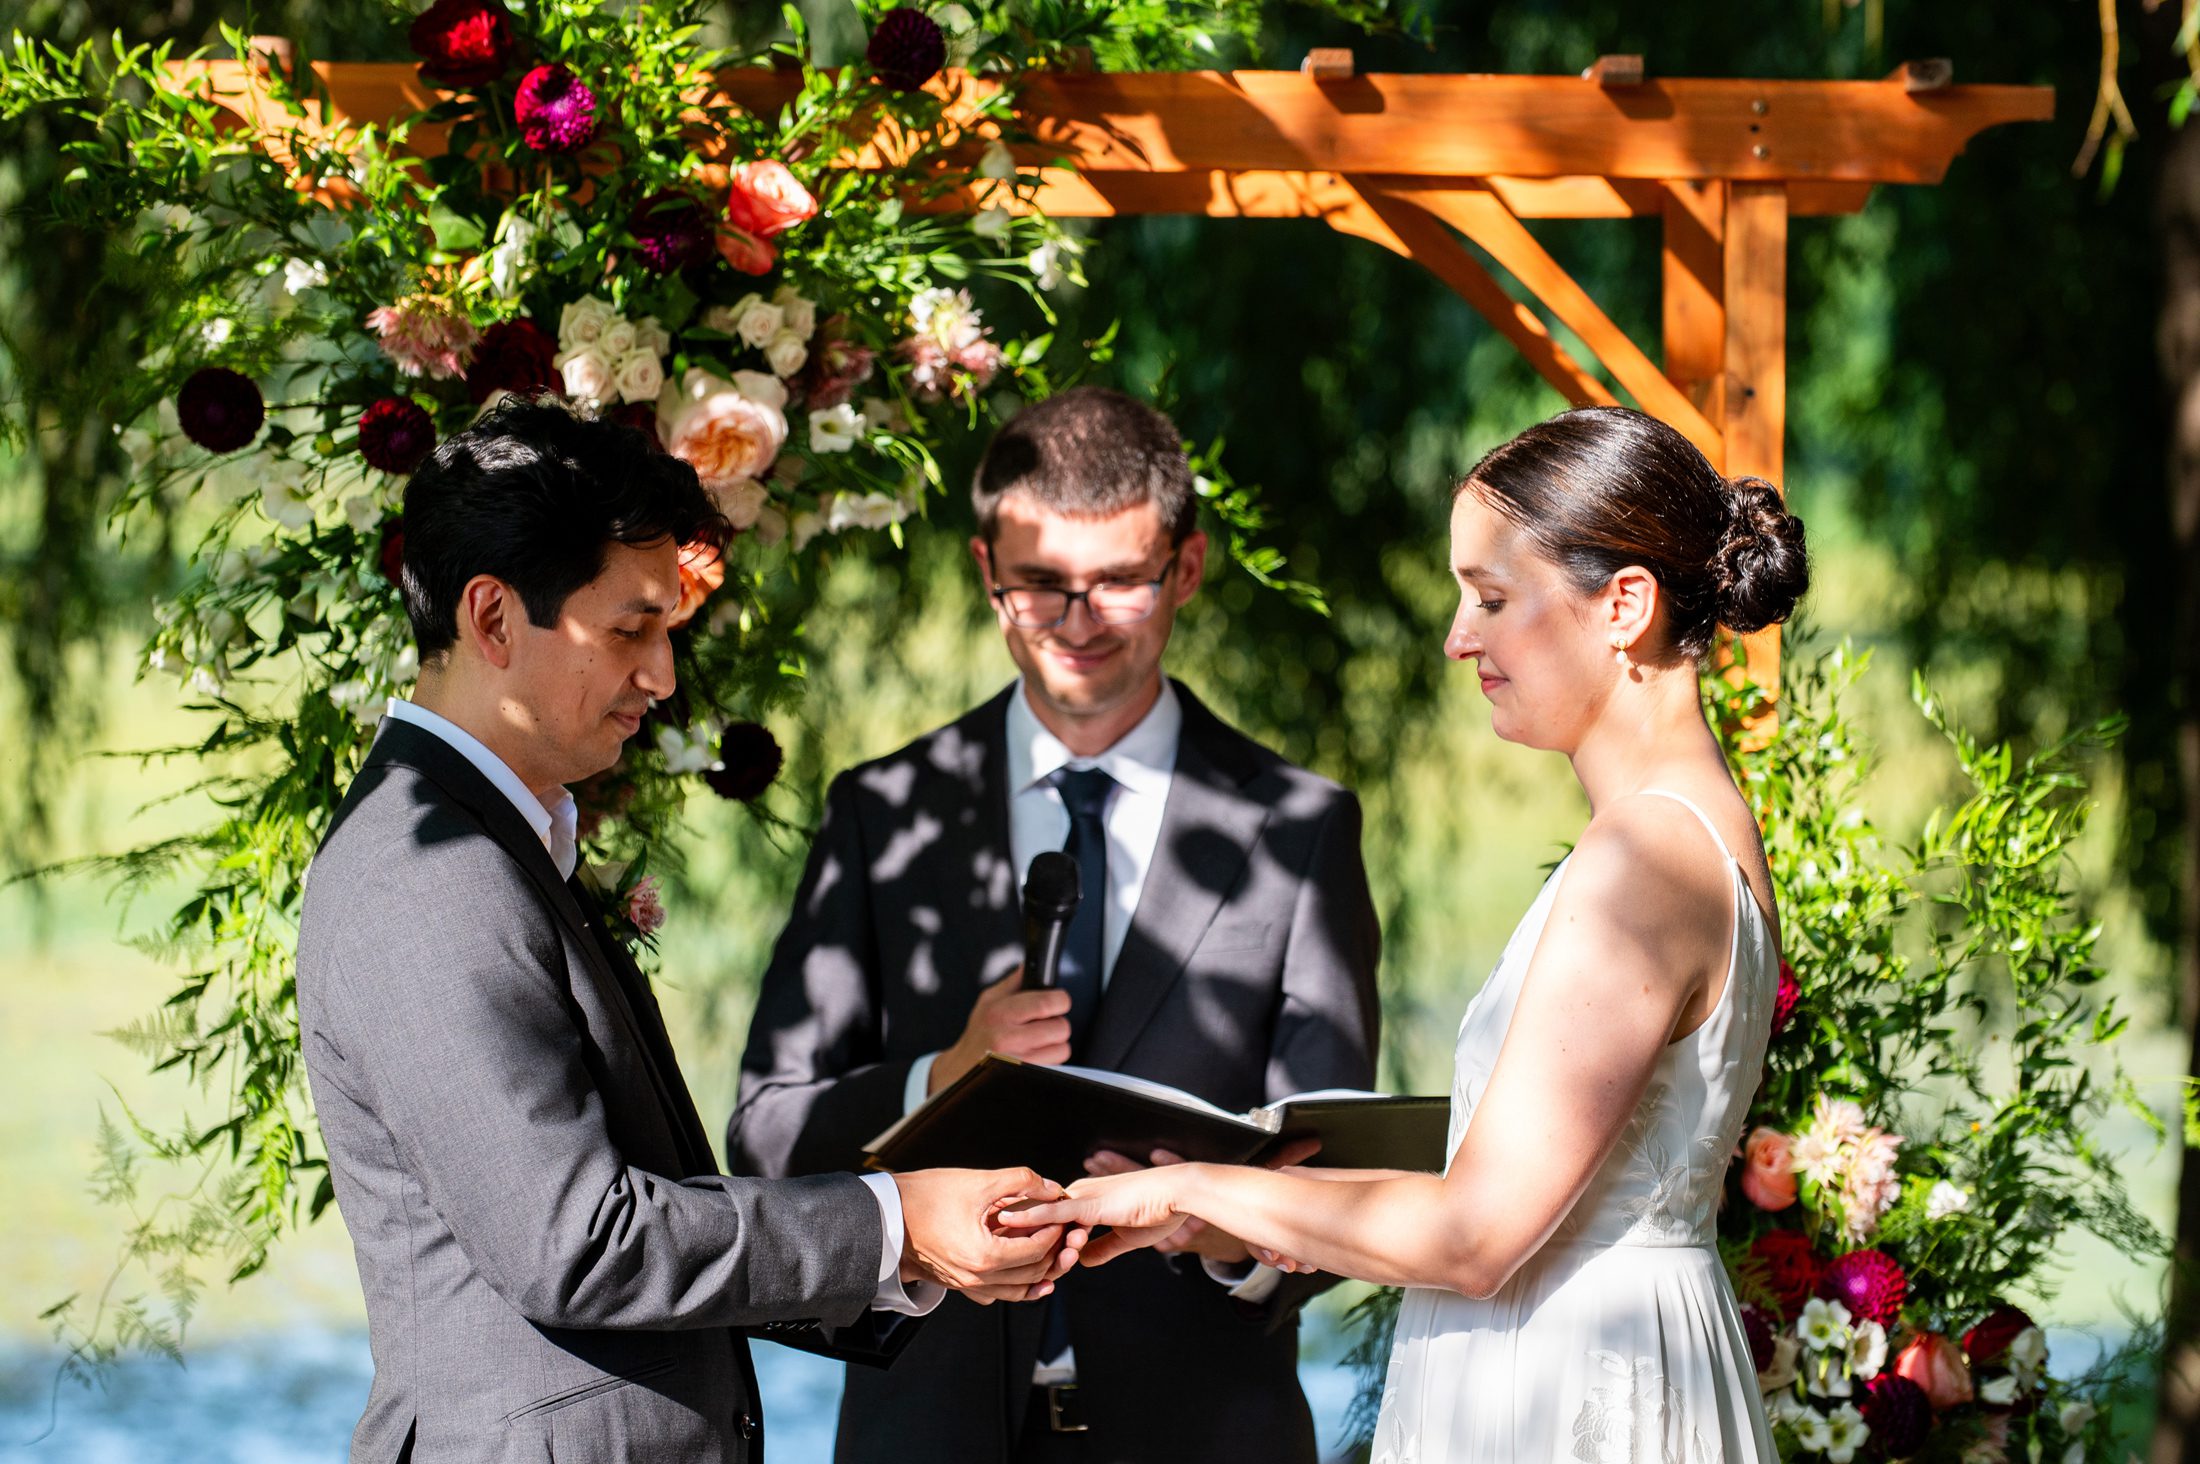 Van Cortlandt Park Wedding Ceremony Photos